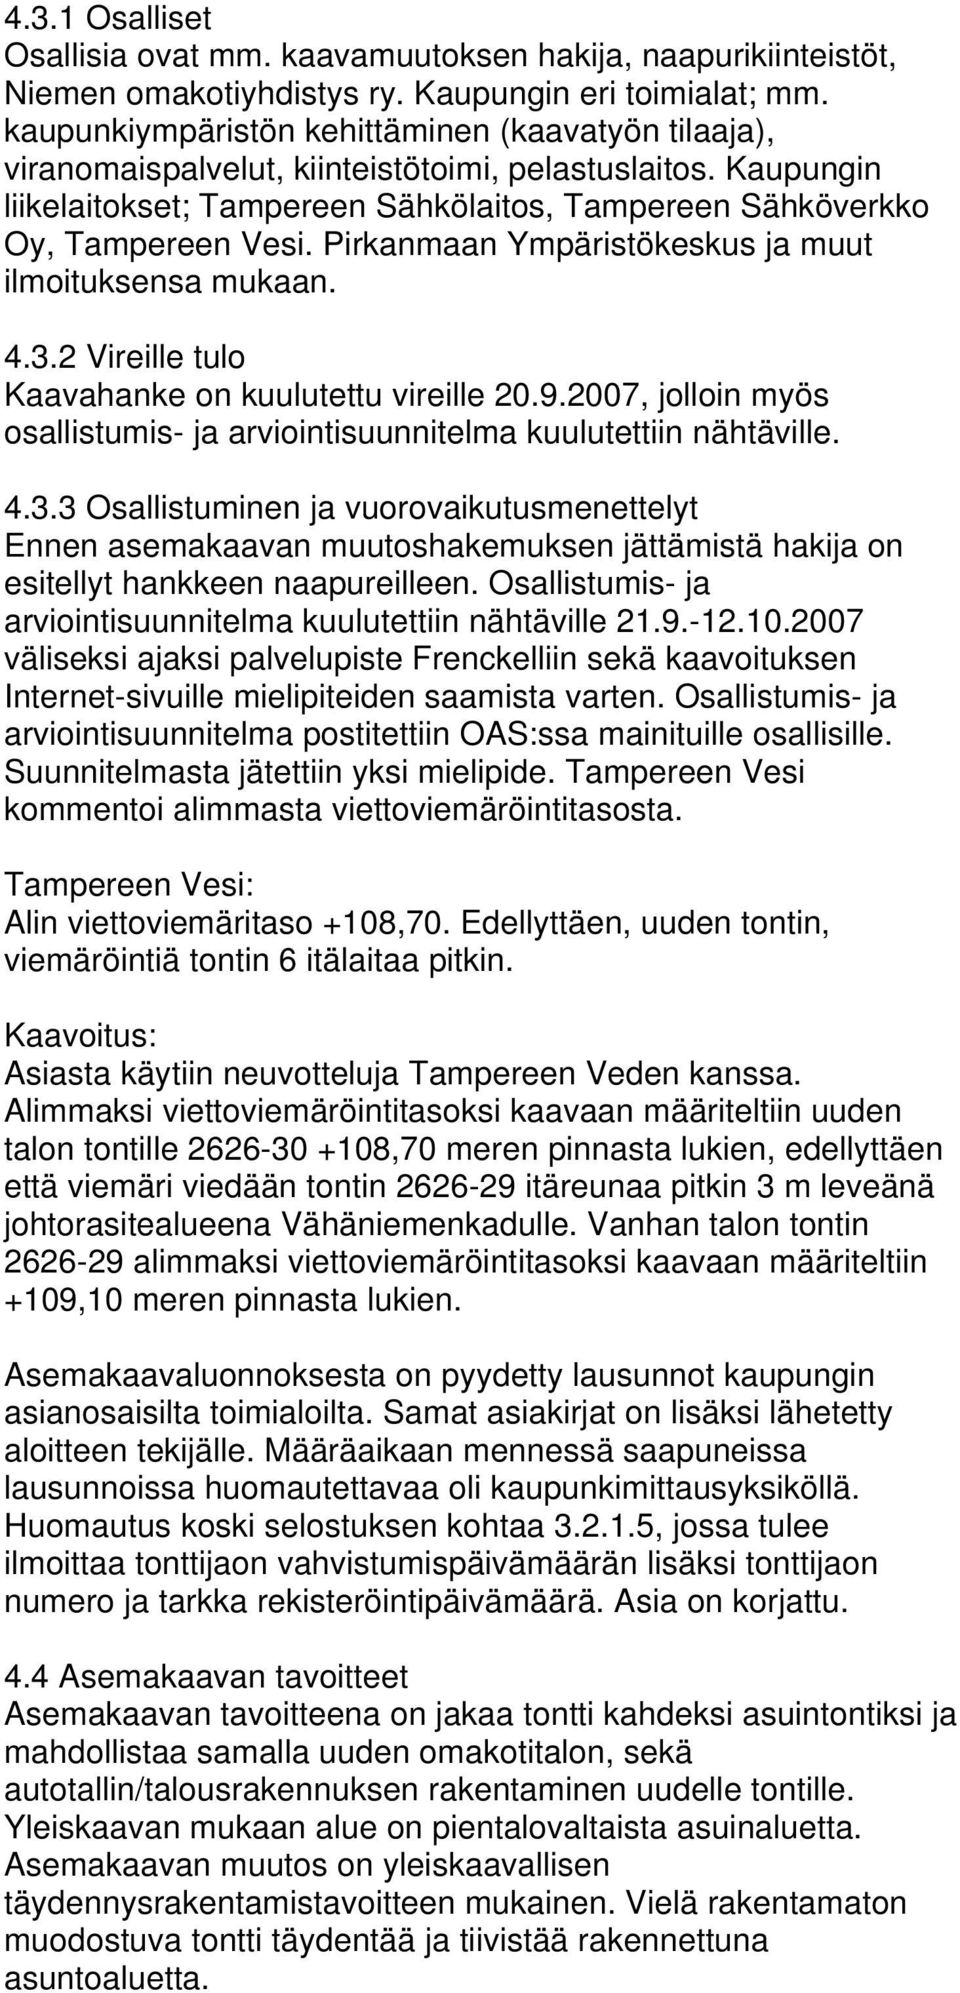 Pirkanmaan Ympäristökeskus ja muut ilmoituksensa mukaan. 4.3.2 Vireille tulo Kaavahanke on kuulutettu vireille 20.9.2007, jolloin myös osallistumis- ja arviointisuunnitelma kuulutettiin nähtäville. 4.3.3 Osallistuminen ja vuorovaikutusmenettelyt Ennen asemakaavan muutoshakemuksen jättämistä hakija on esitellyt hankkeen naapureilleen.